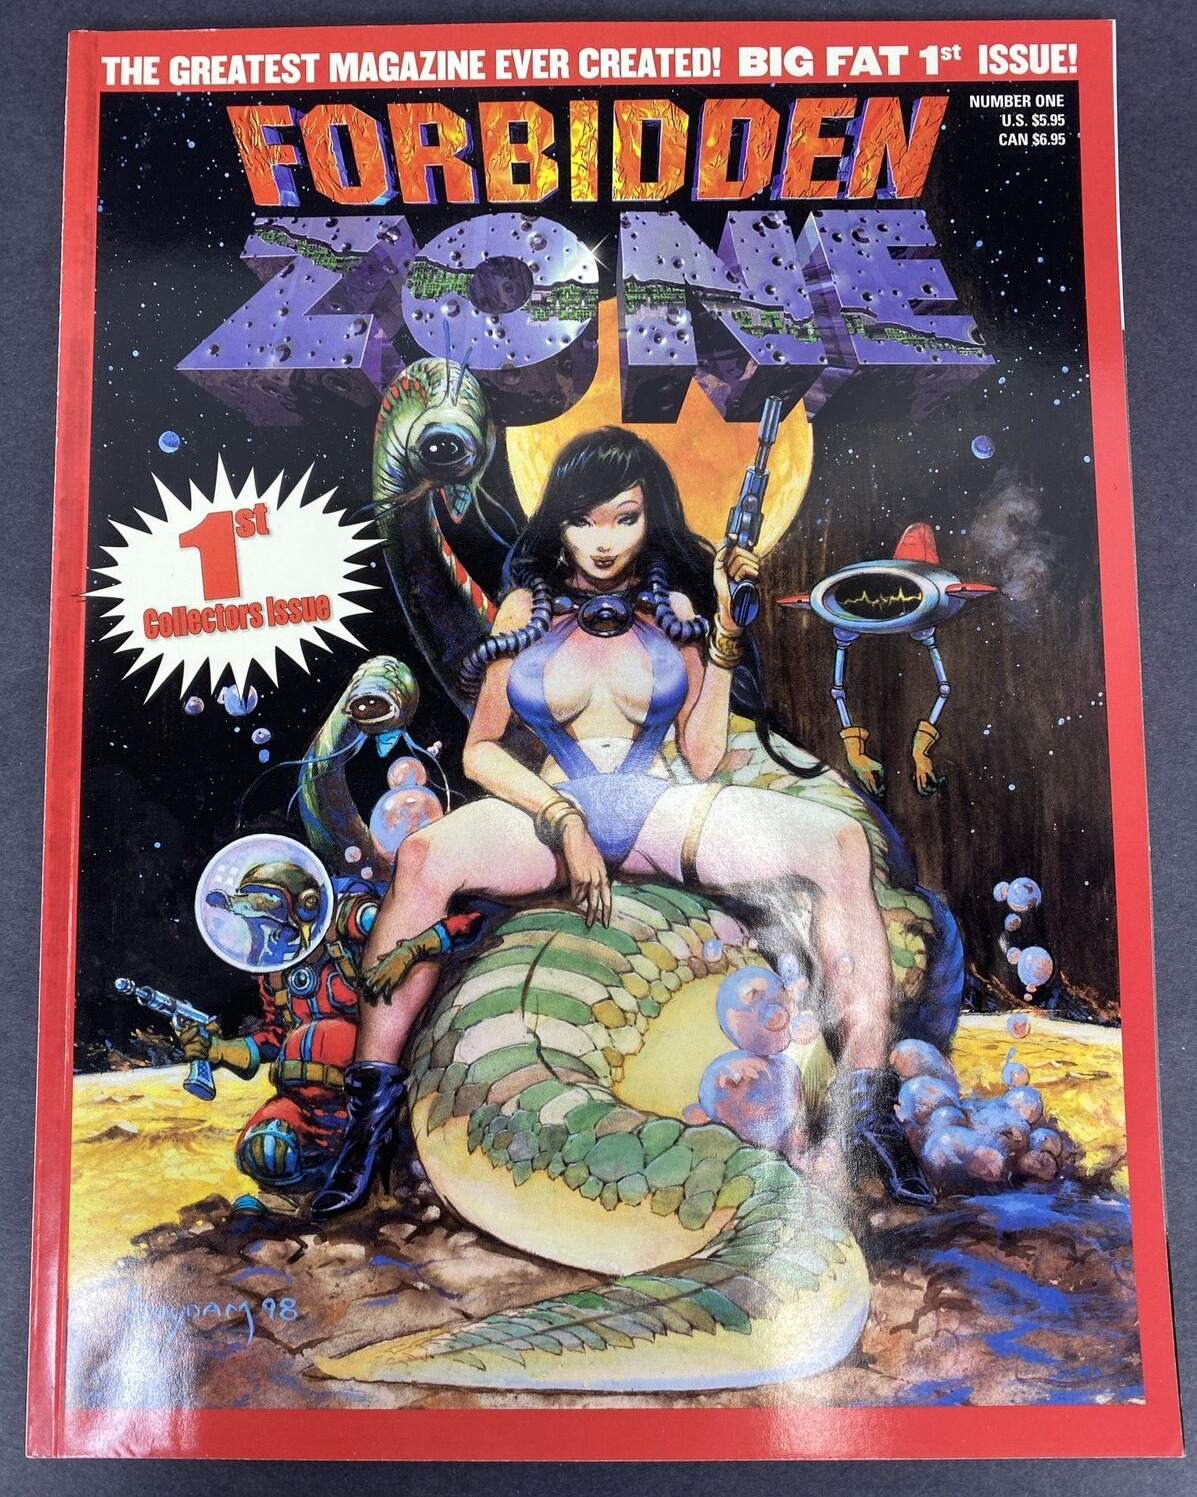 FORBIDDEN ZONE #1 (1999) Magazine - Suydam Corben - EXCELLENT CONDITION